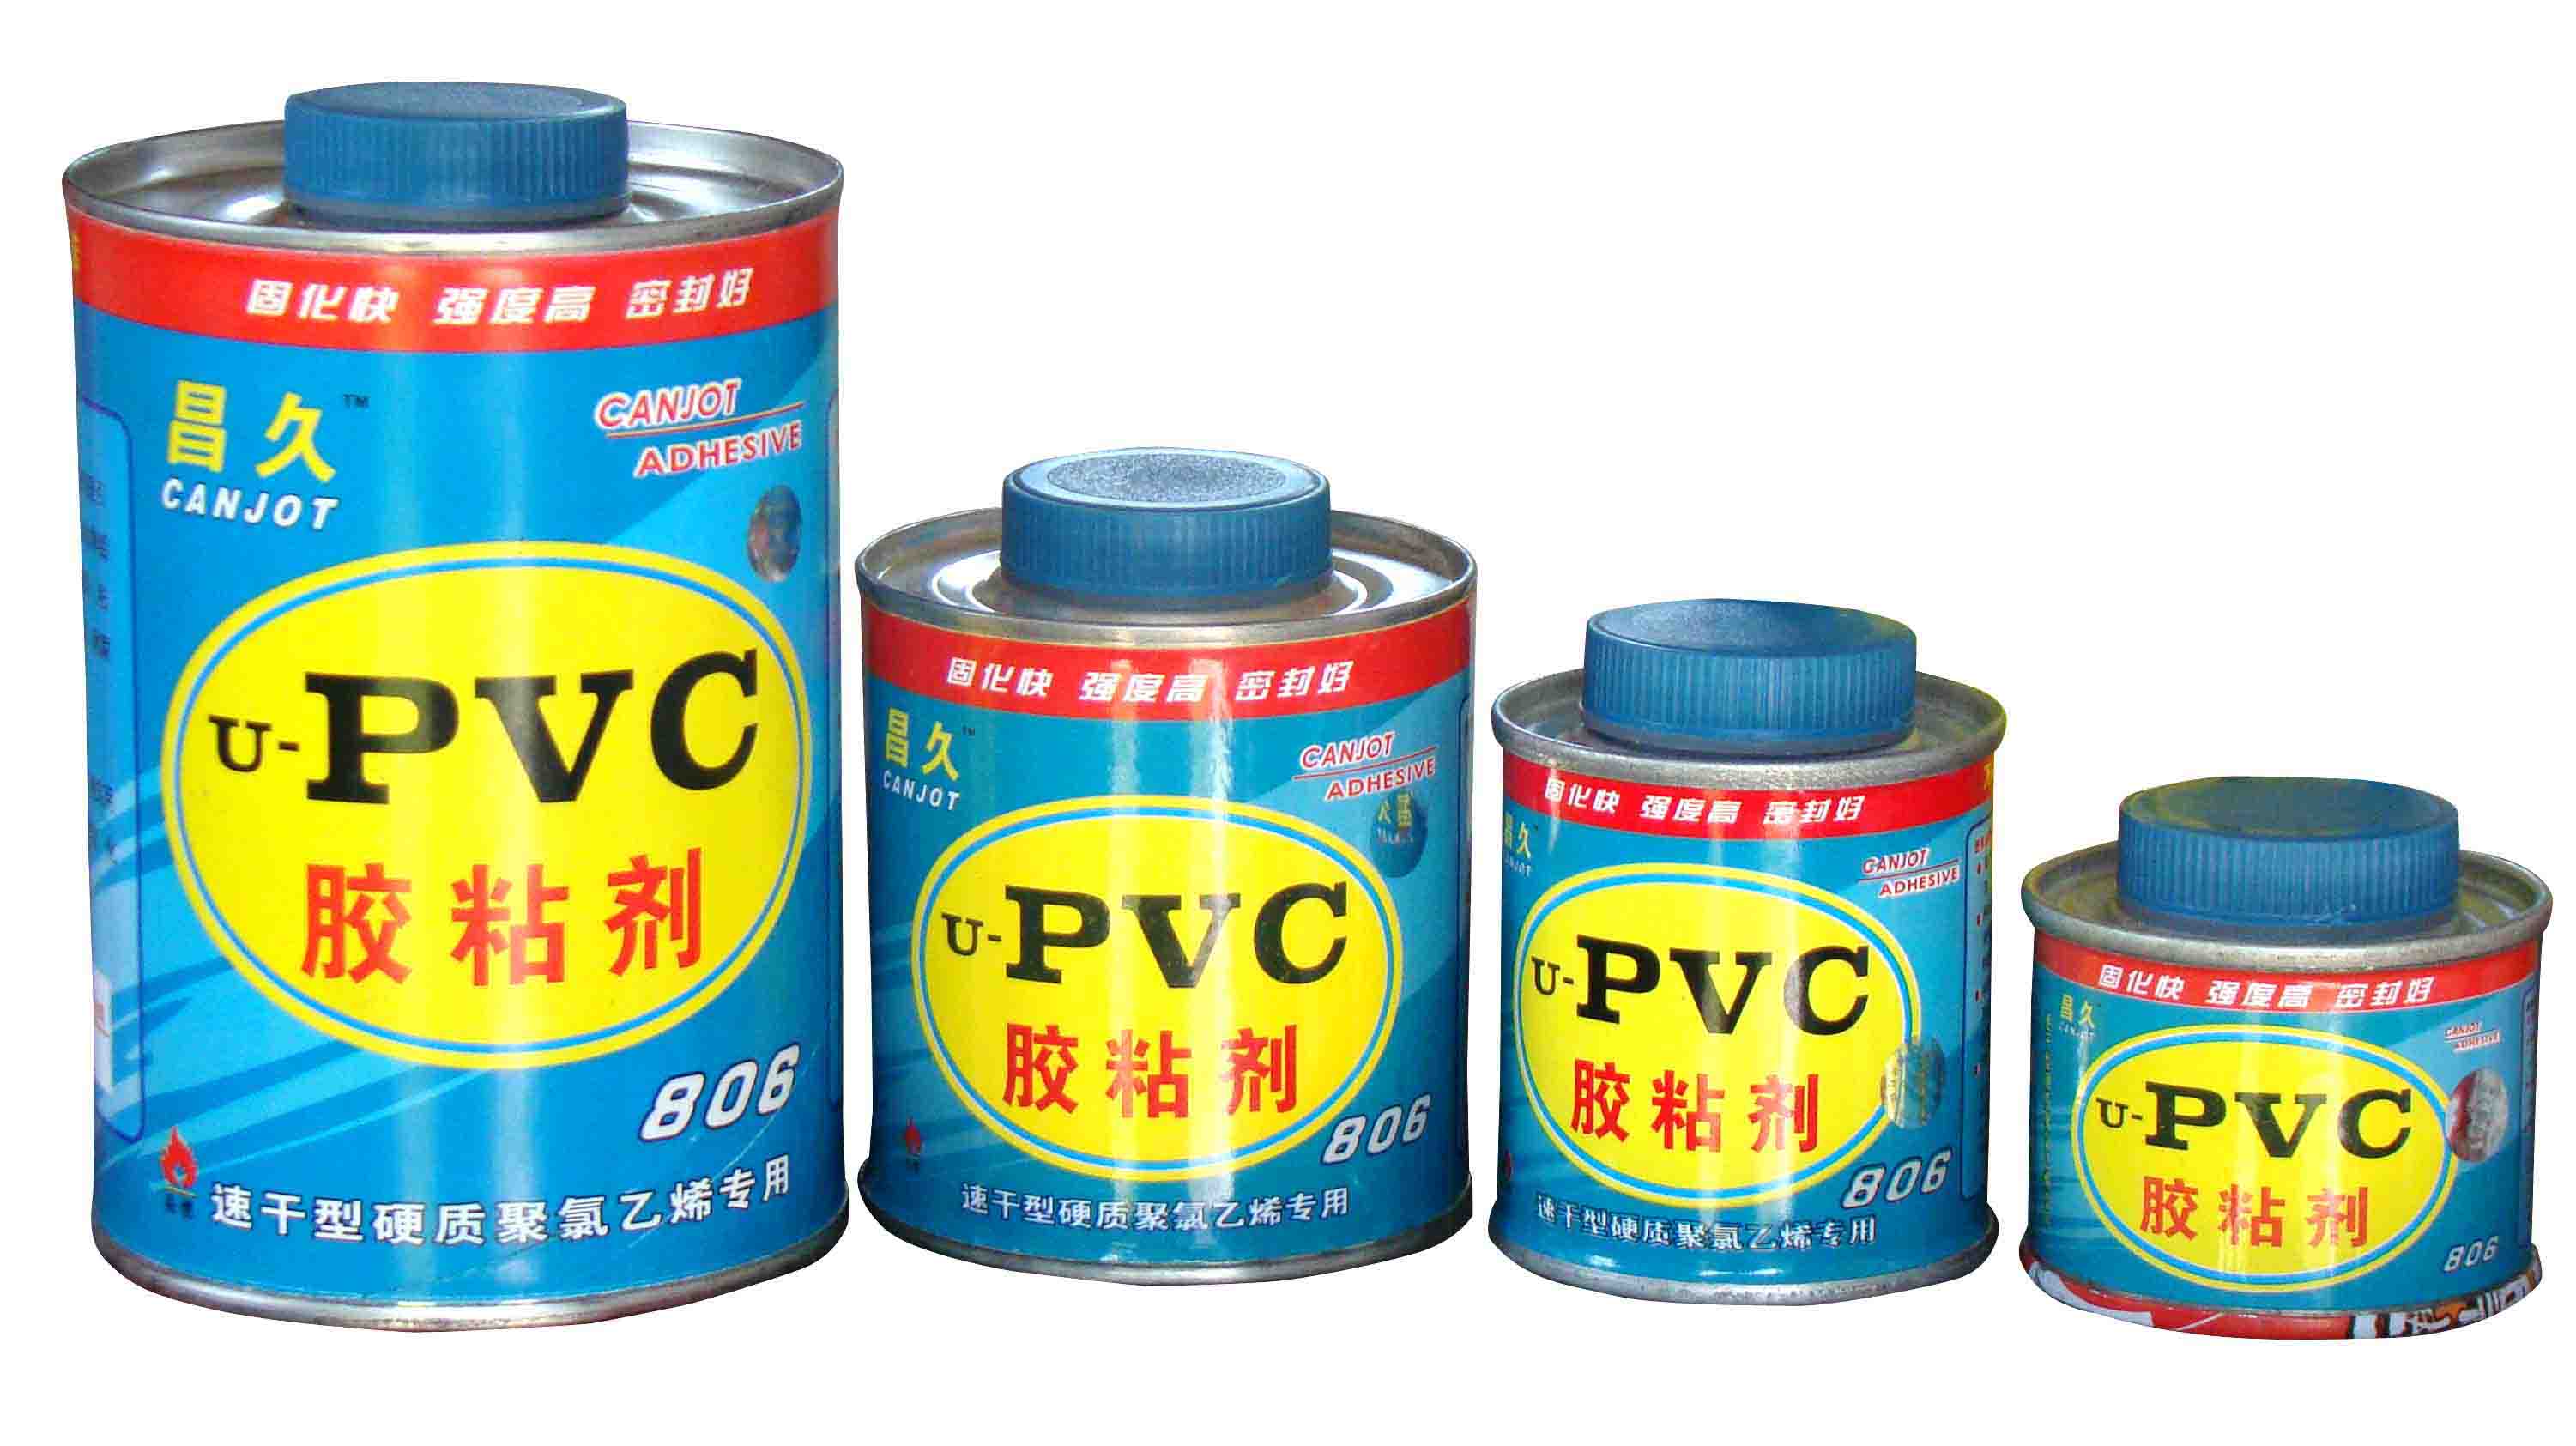 上海胶水粘合剂进口代理& 胶水粘合剂进口报关& 专业化工进口